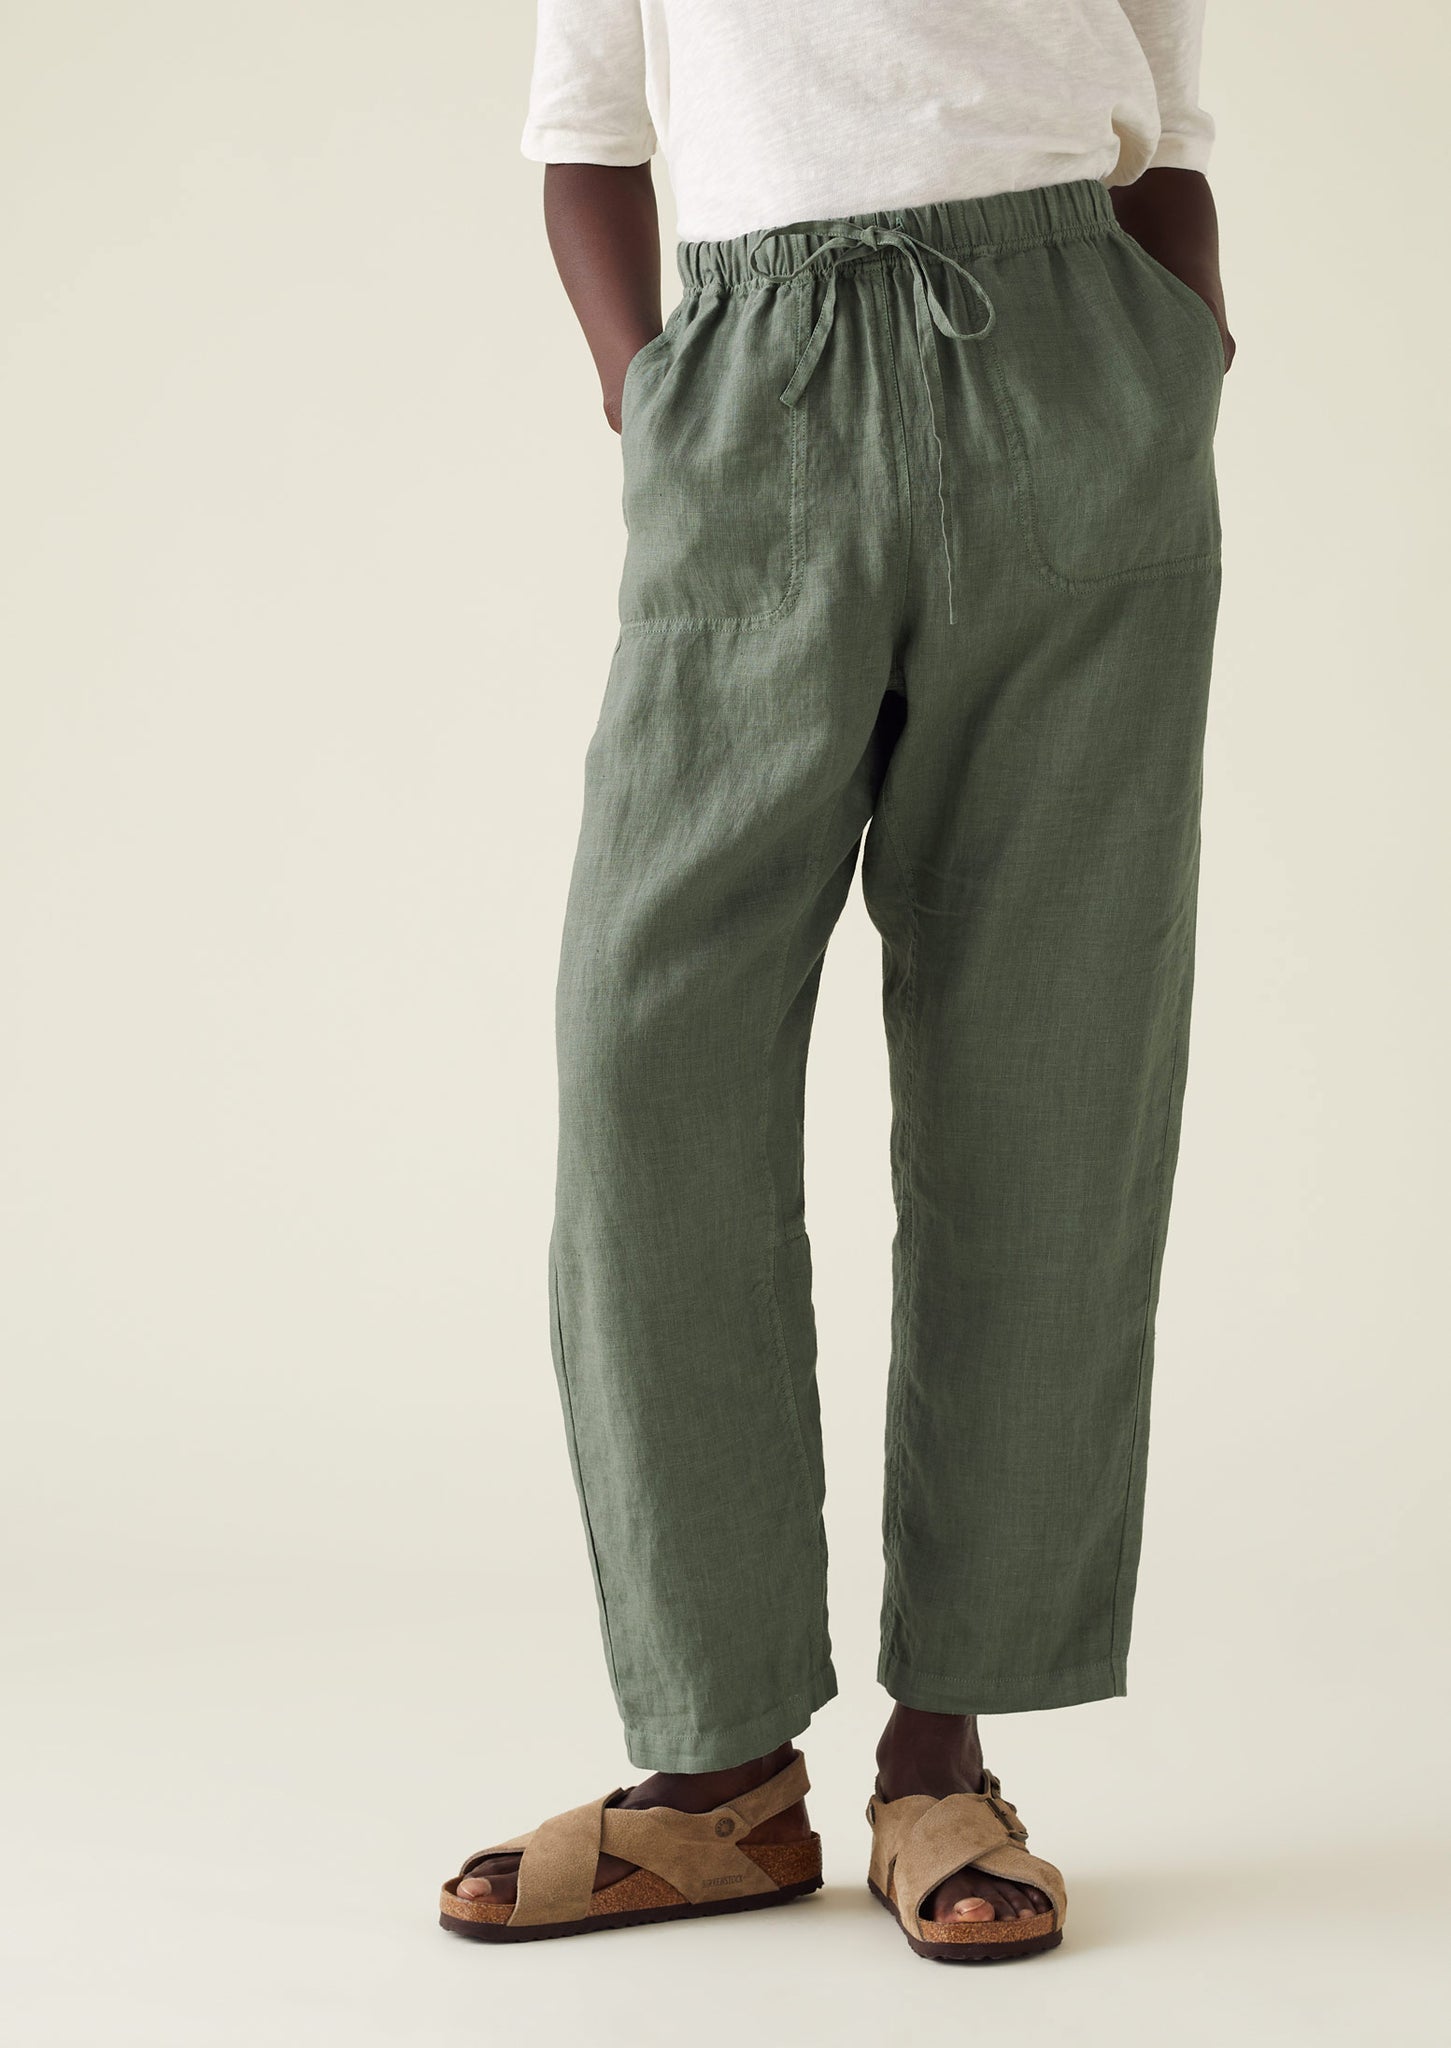 Buy Valletta Pants Linen Pants Grey Linen Trousers Suit Online in India   Etsy